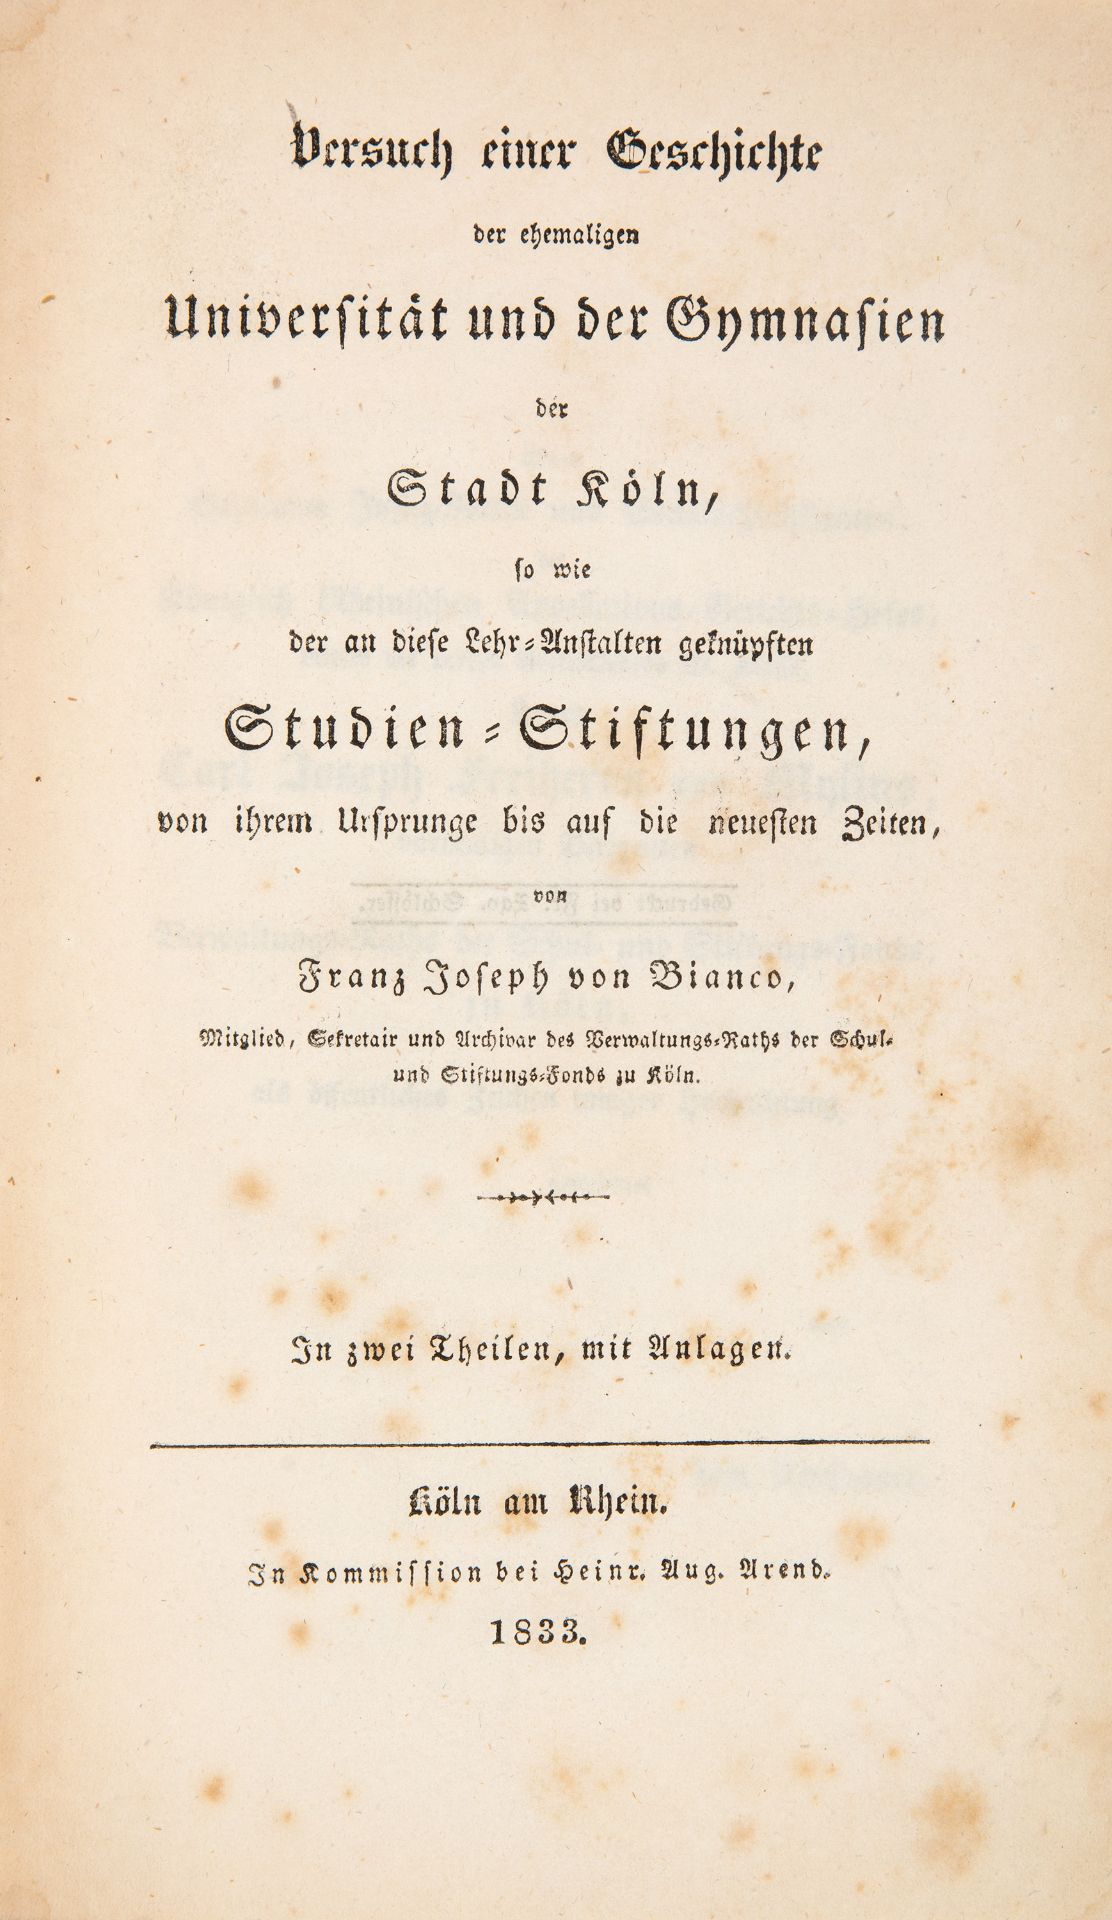 F. J. von Bianco, 3 Werke in 4 Bdn. Köln 1833-1855. - Bild 2 aus 3